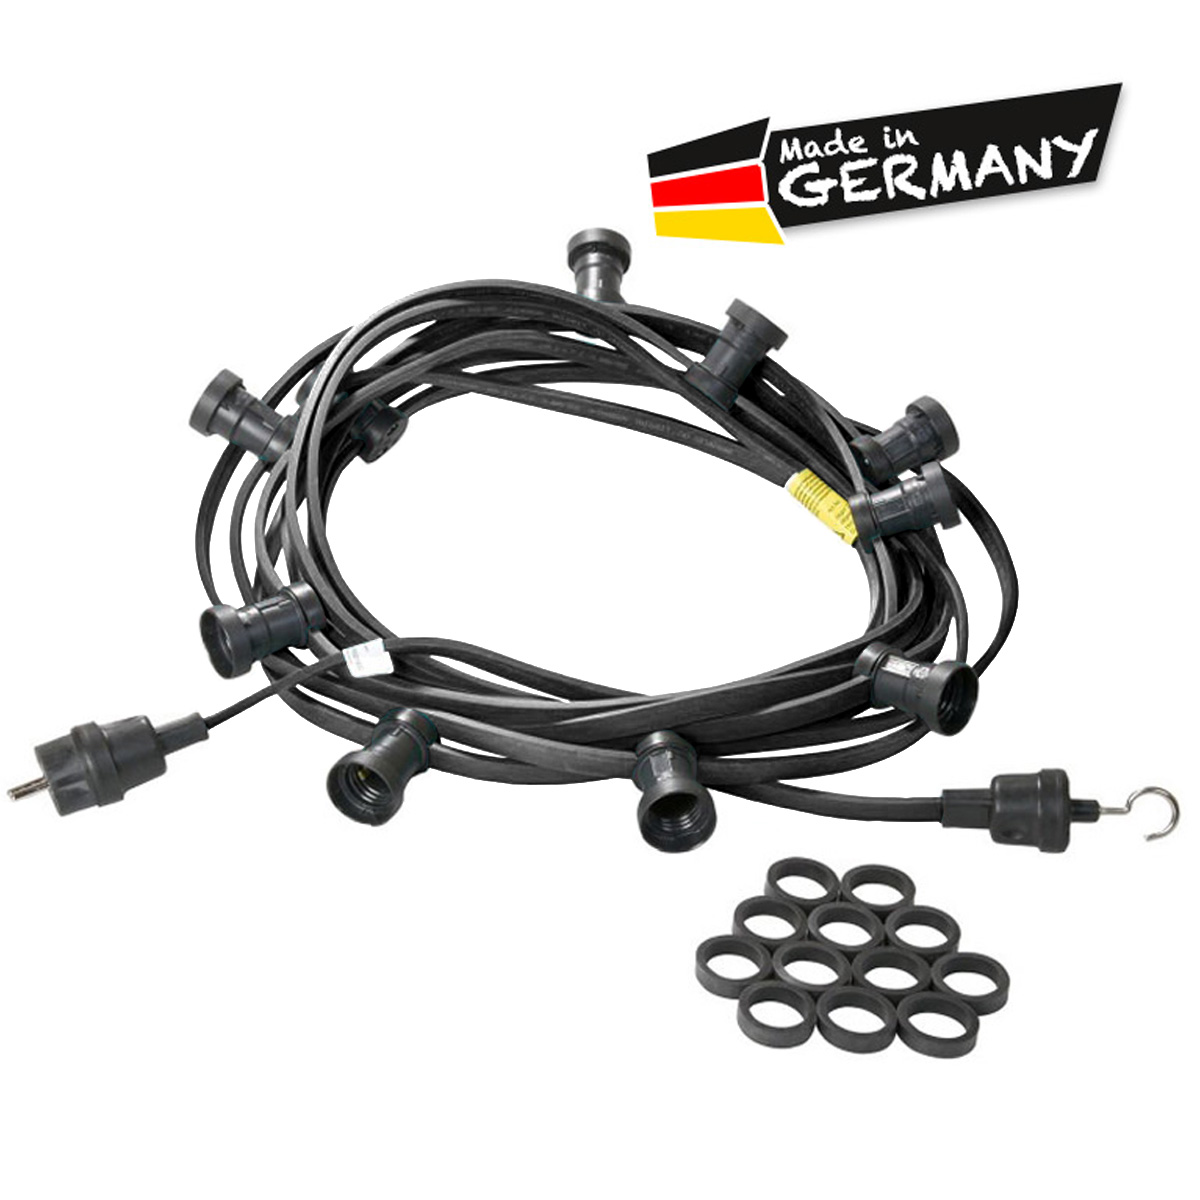 Illu-/Partylichterkette schwarz 30m | Außenlichterkette | Made in Germany | 50 x E27 Schraubfassung